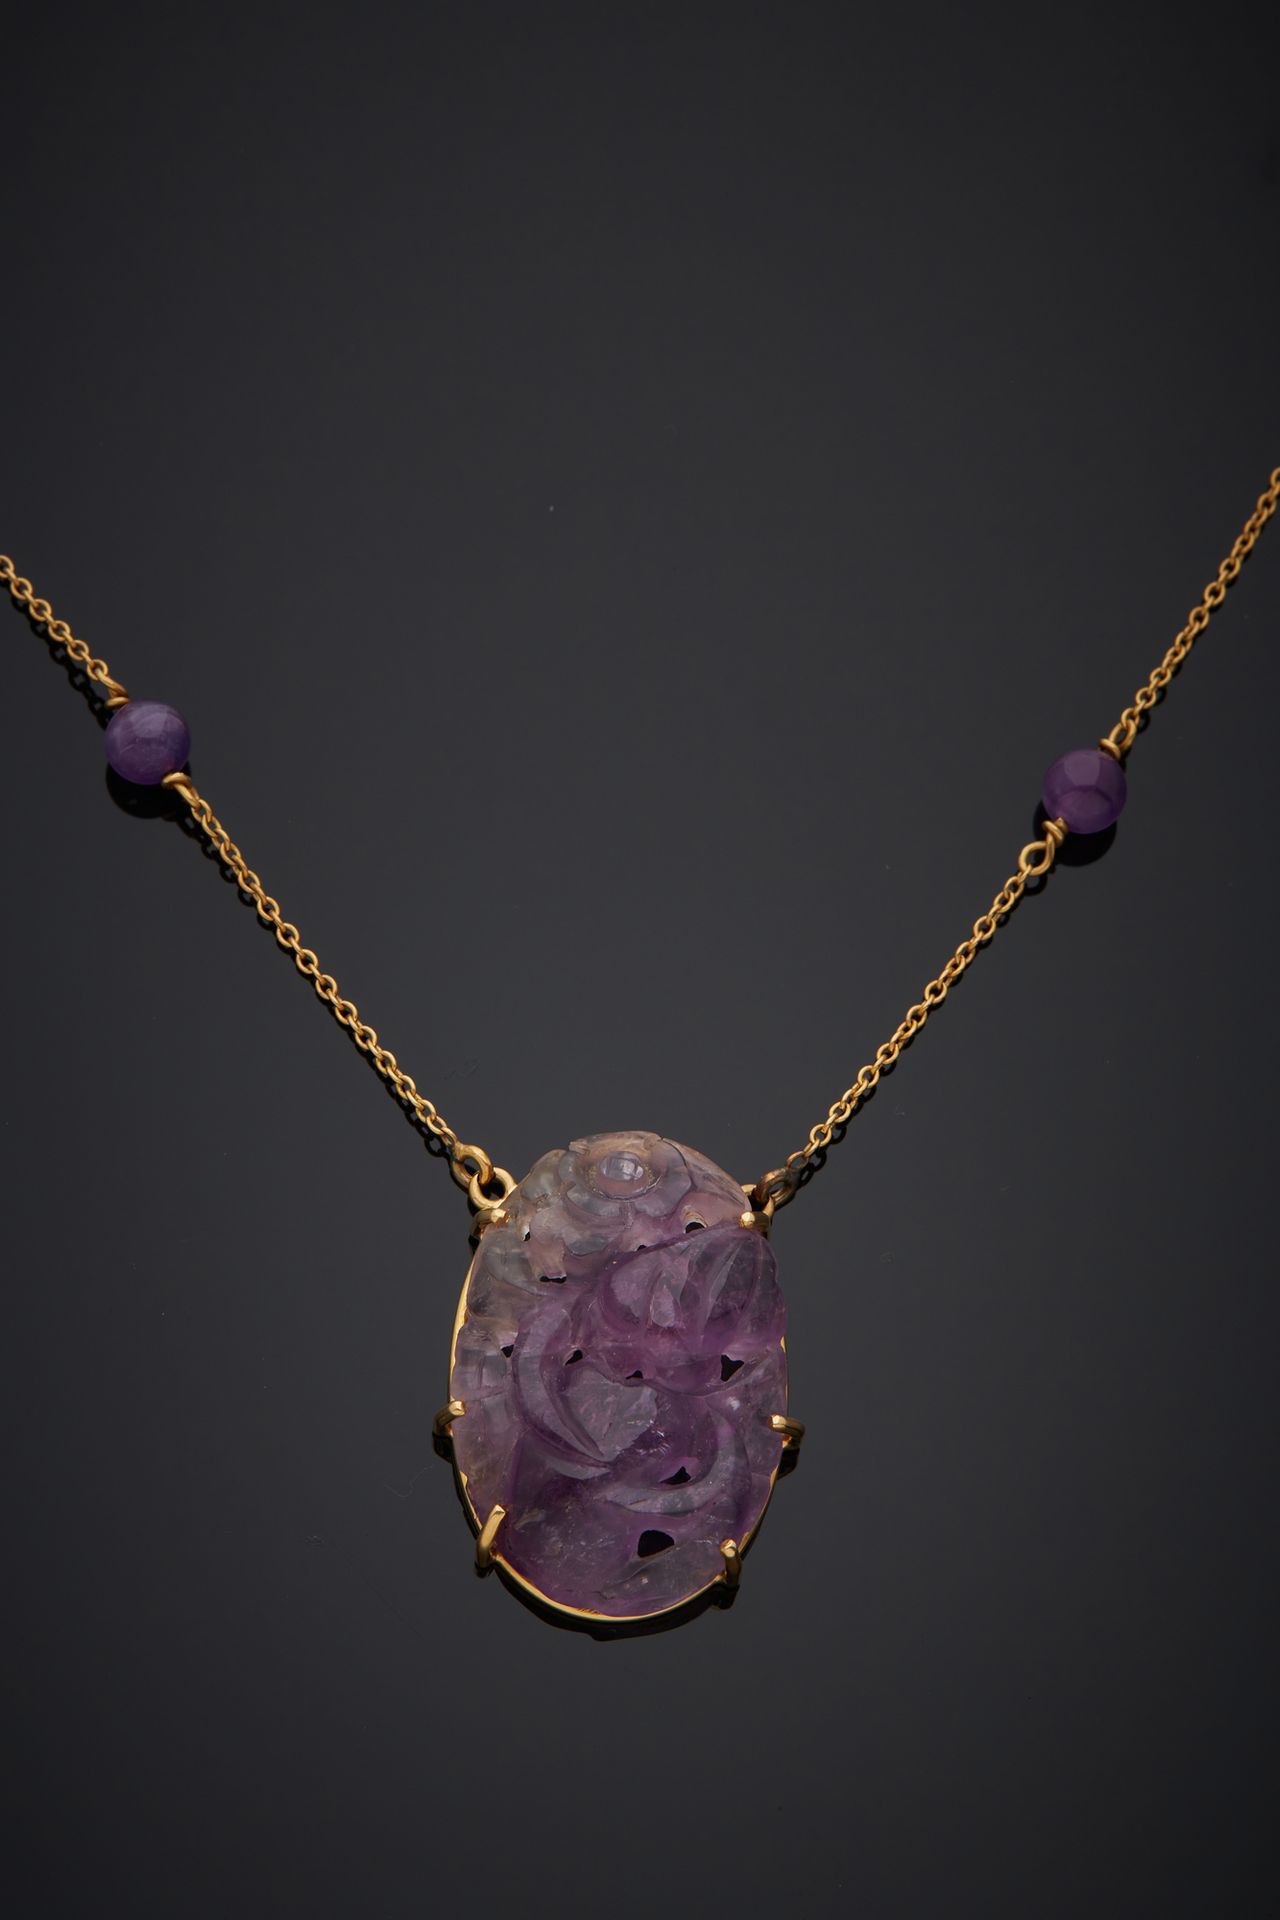 Null 750‰的18K黄金项链，装饰有雕刻和穿孔的紫水晶，链子上有紫水晶球的scandé。

长41厘米 毛重12.90克